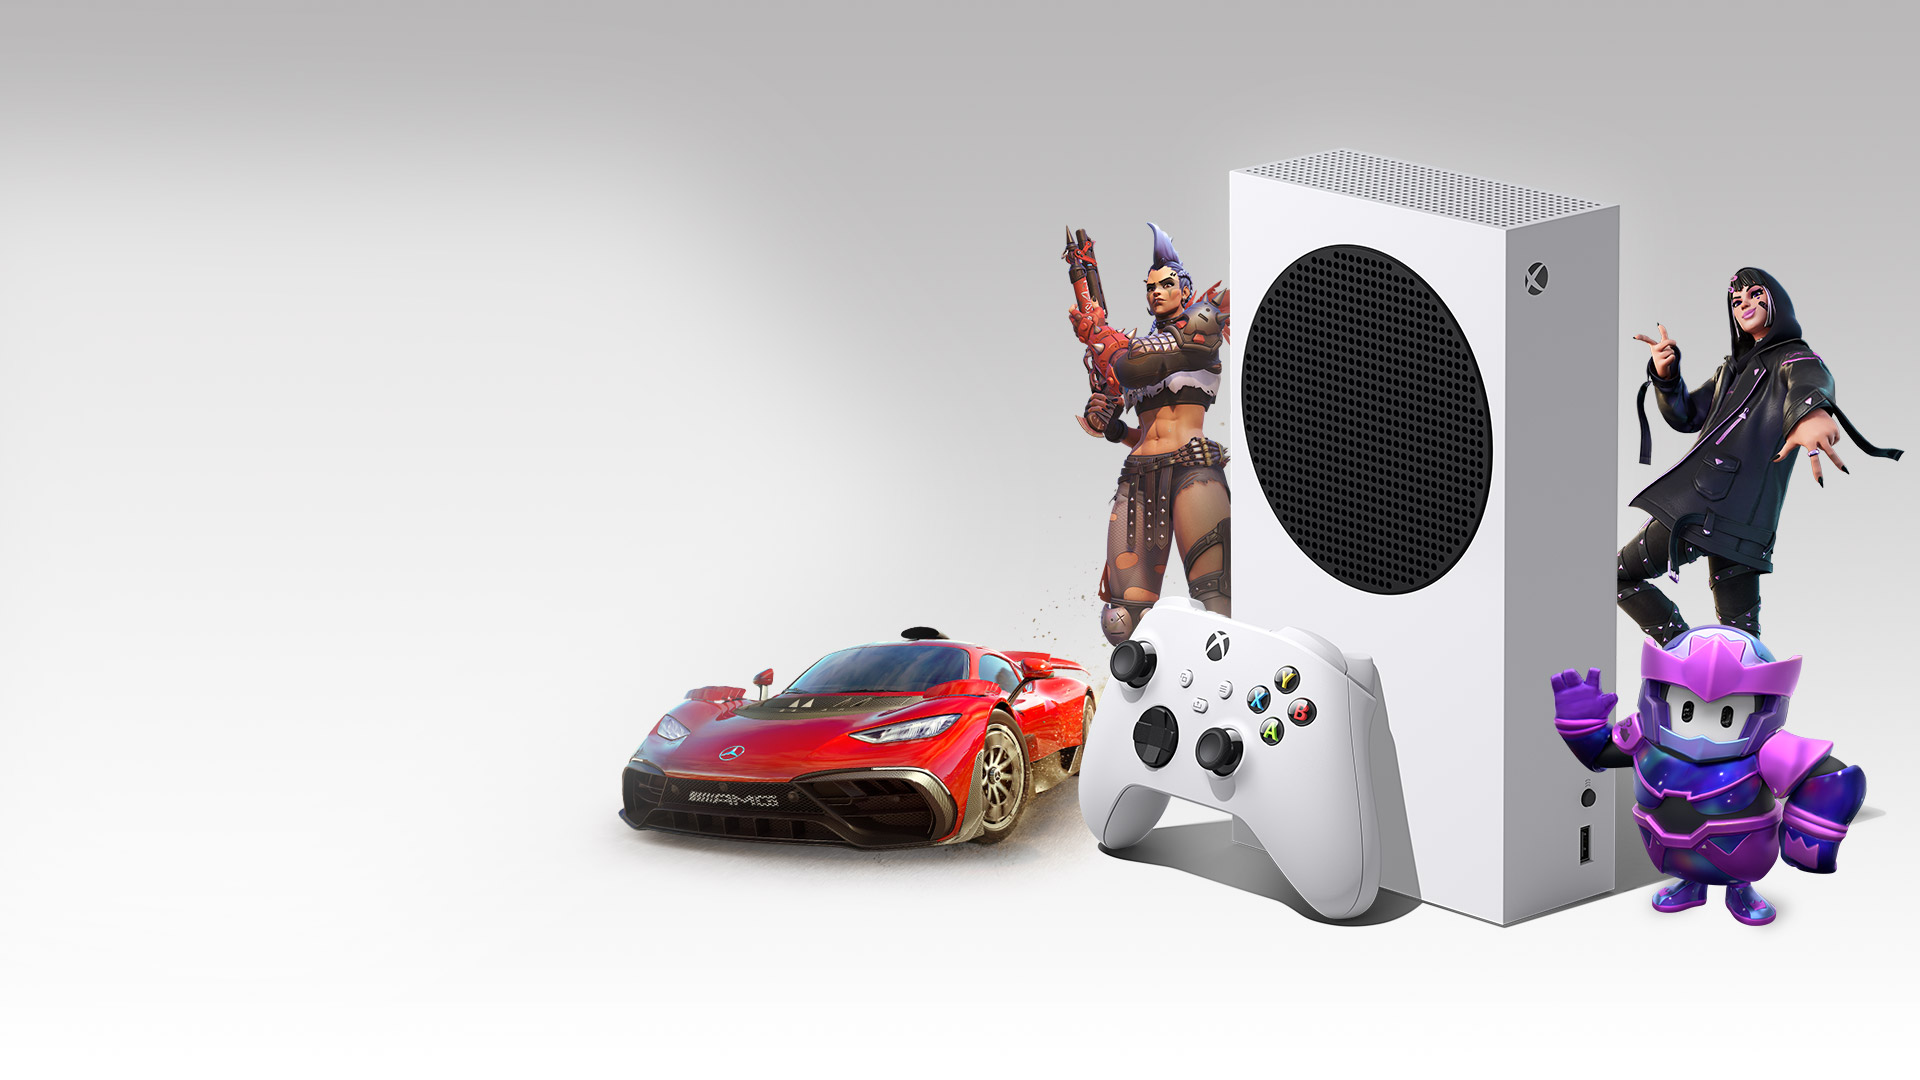 En Xbox Series S omgiven av karaktärer från Overwatch 2, Fortnite, Fall Guys och Mercedes-AMG One från Forza Horizon 5.